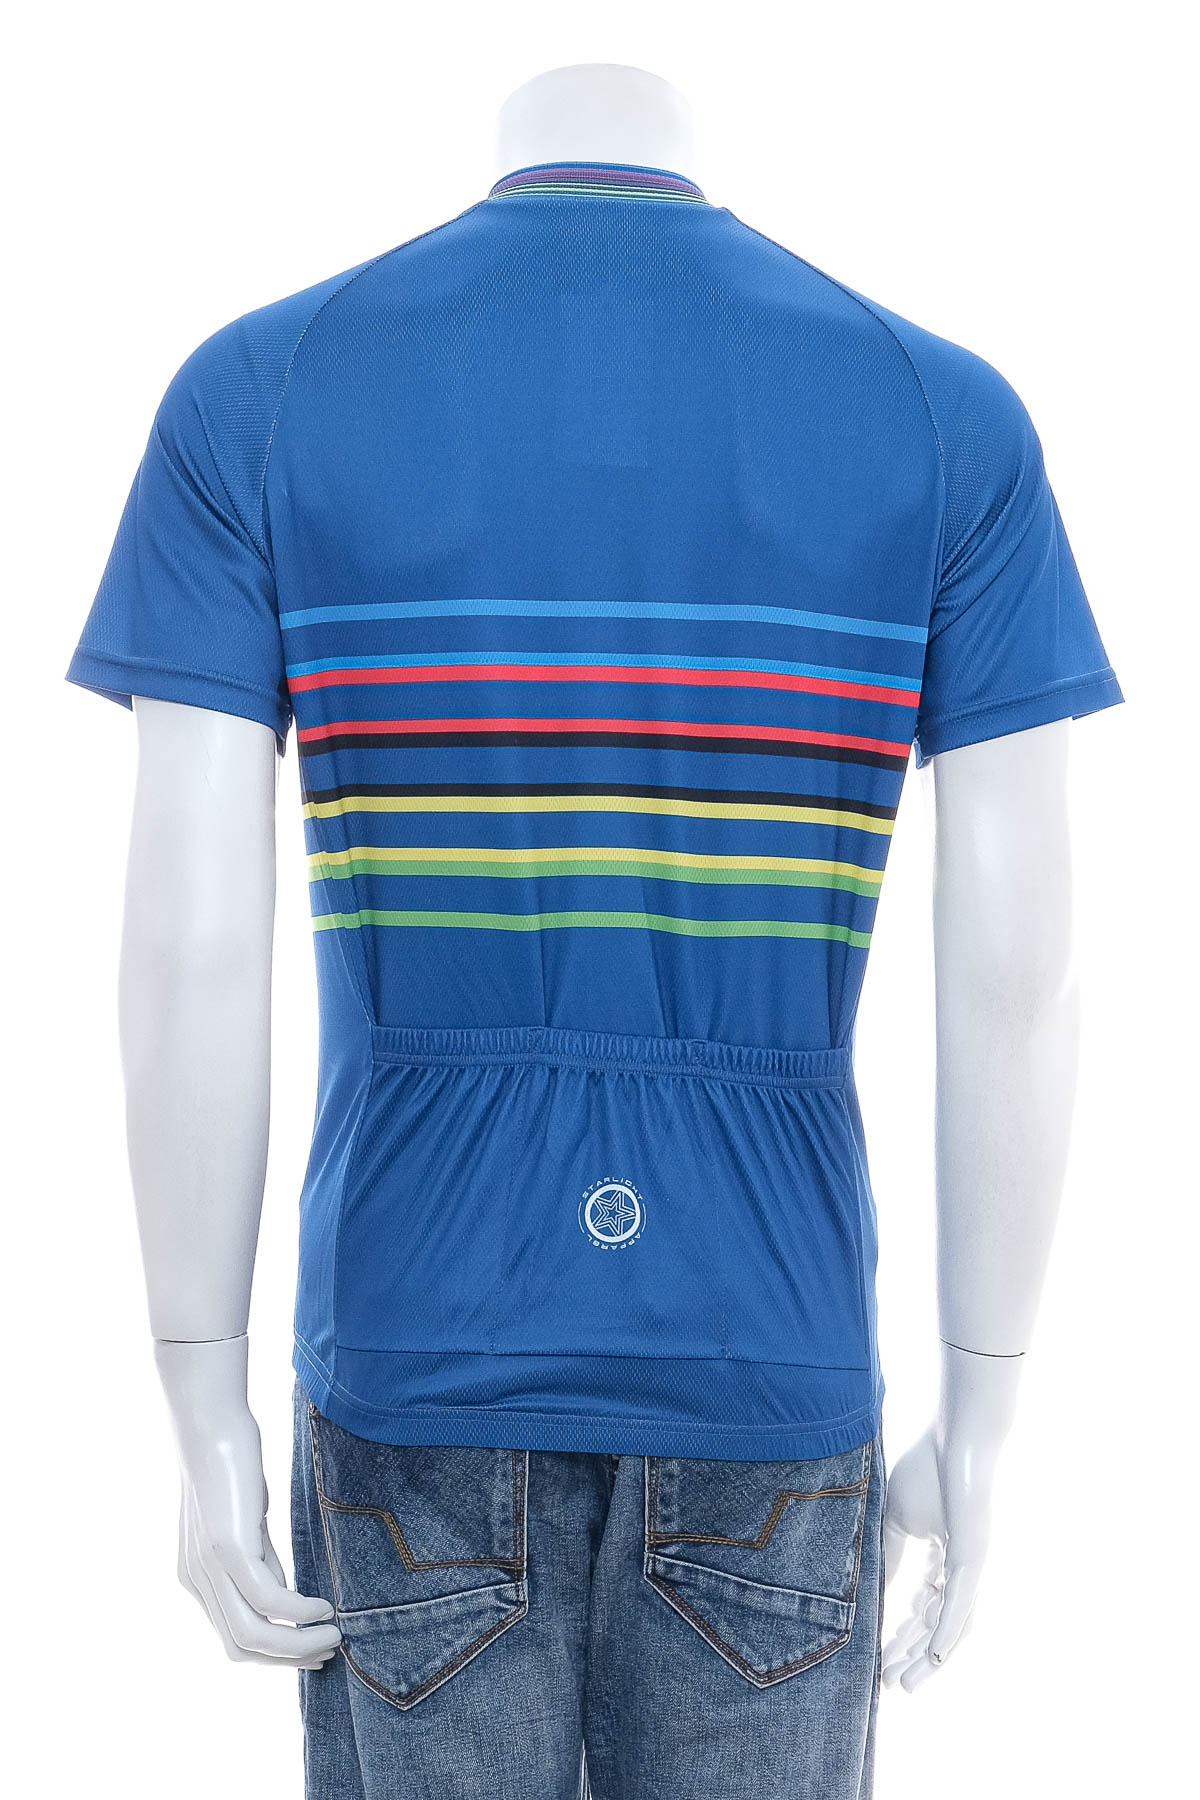 Tricou de sport bărbați pentru bicicletă - STARLIGHT - 1